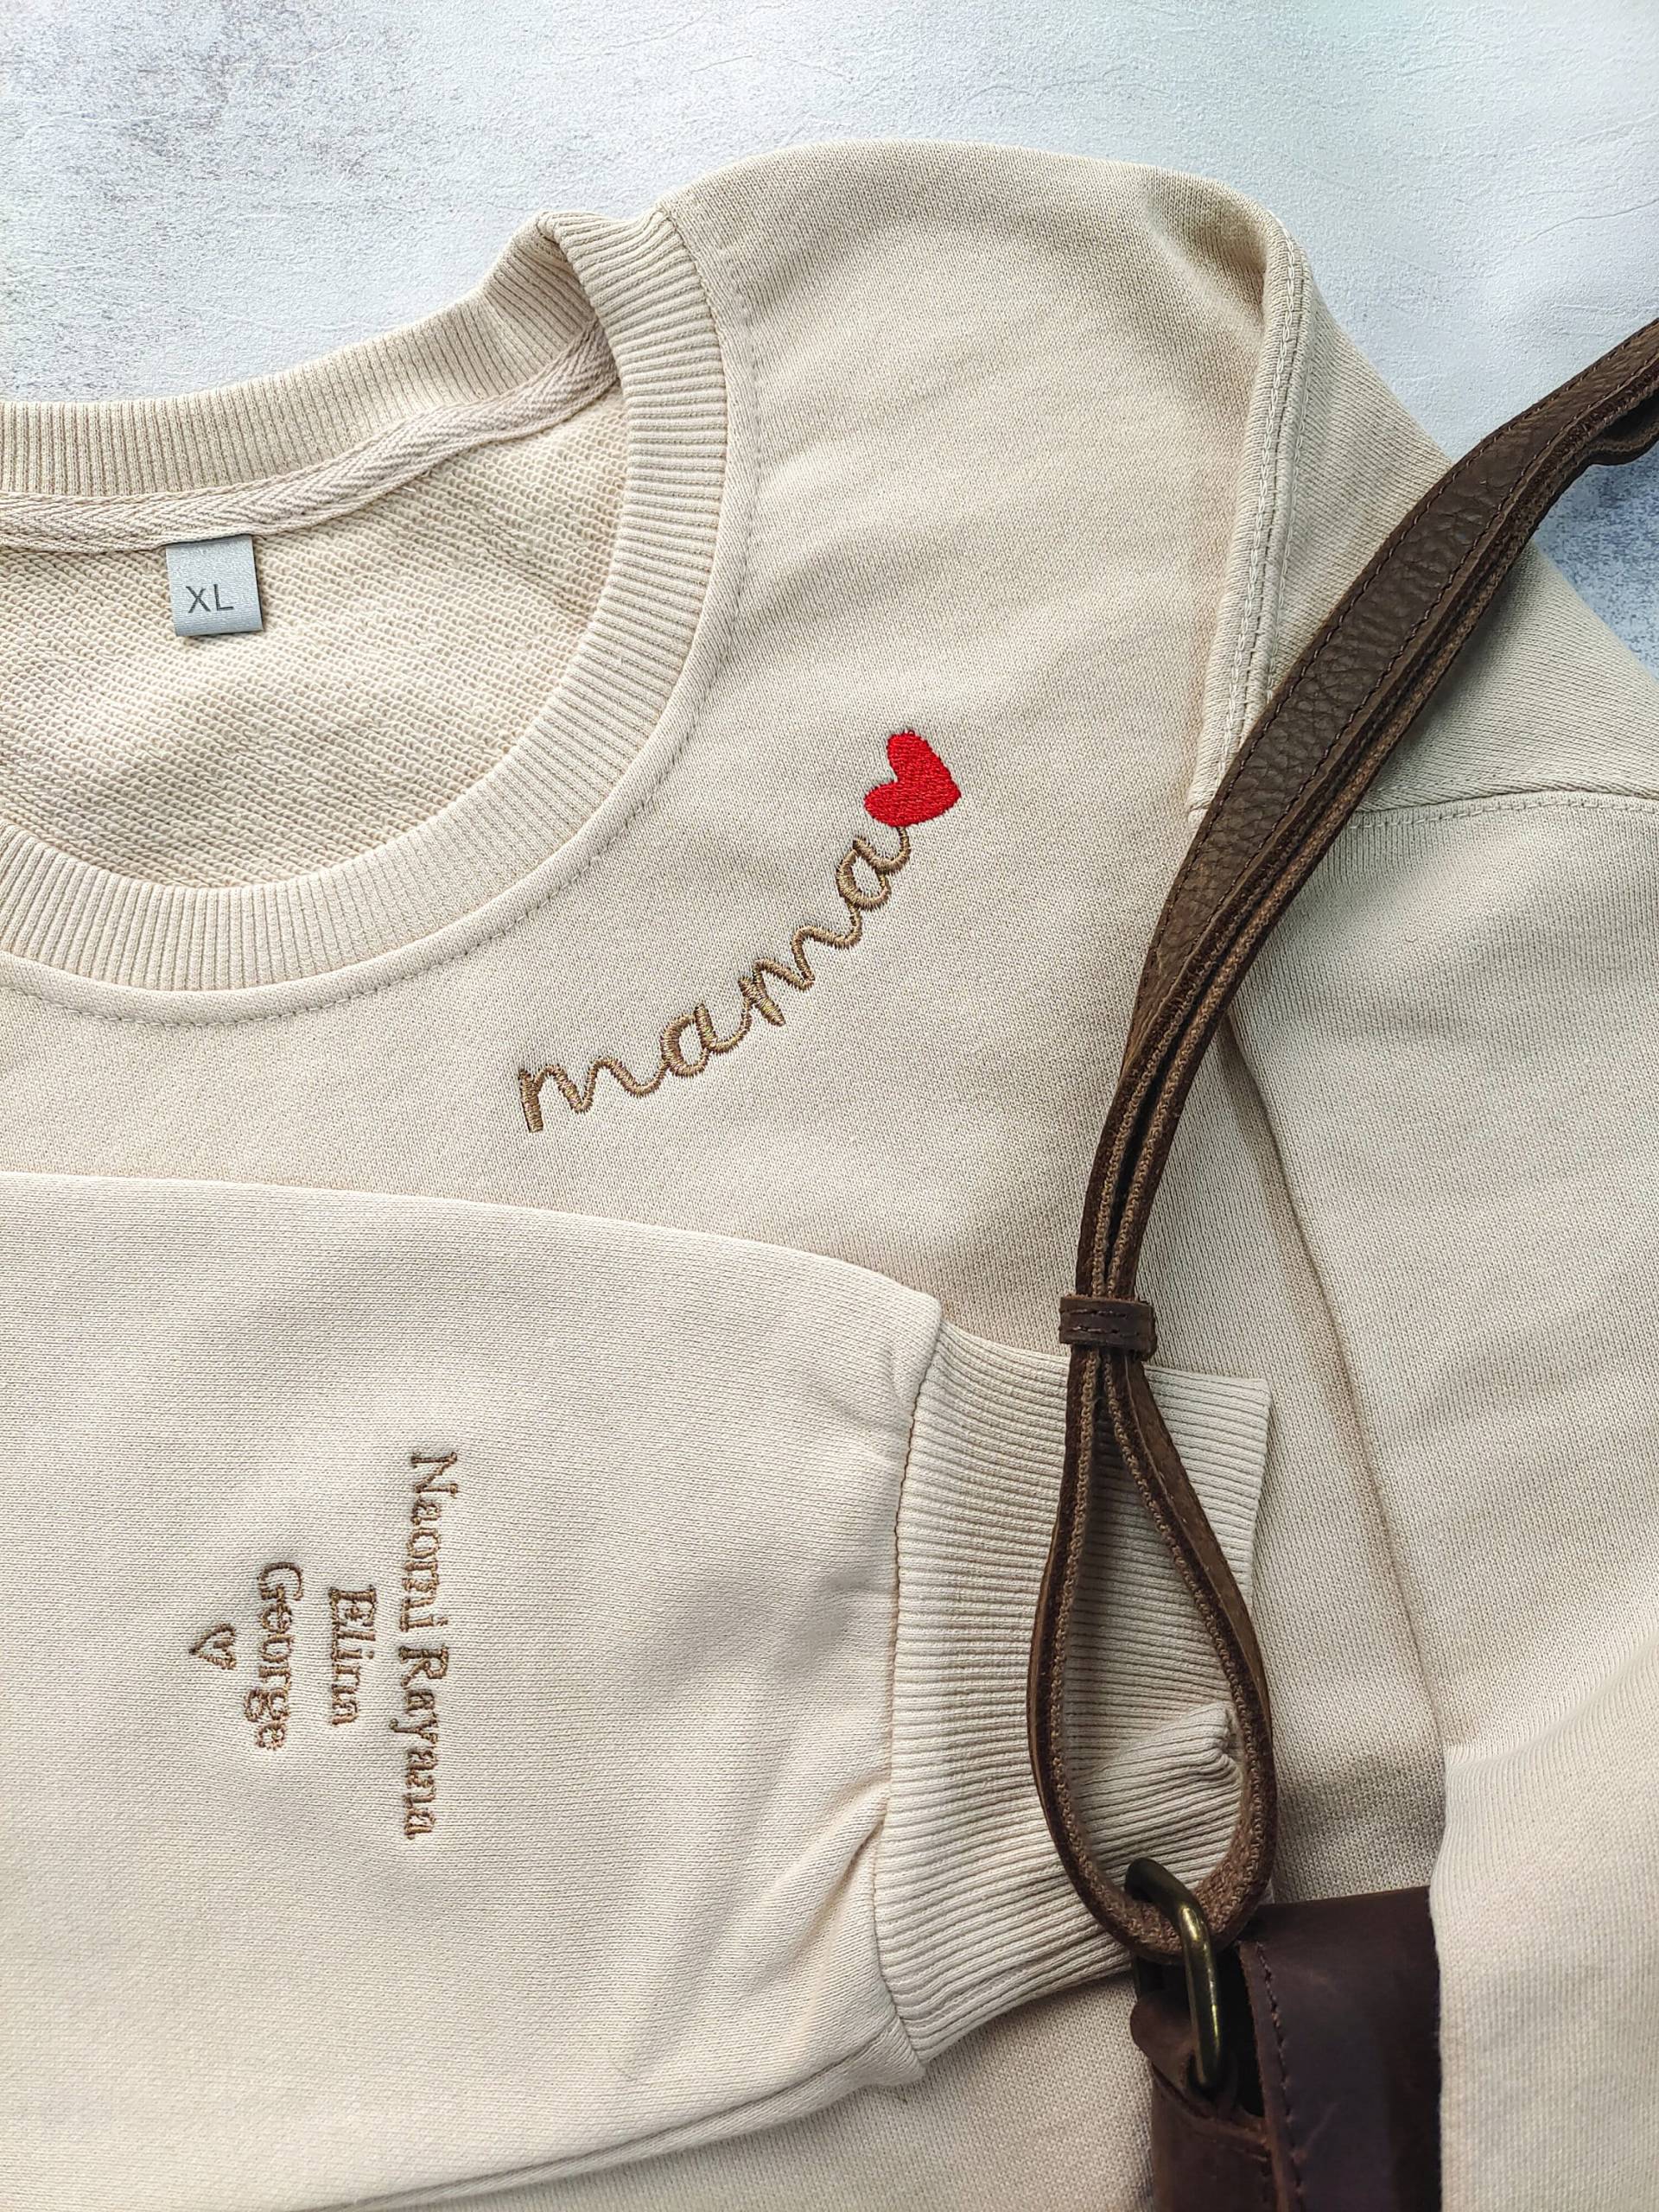 Benutzerdefinierte Mama Besticktes Sweatshirt, Benutzerdefinierte Crewneck Mit Kindernamen, Personalisiertes Geschenk Für Mama, Muttertagsgeschenk von DreamLakeStudioAU